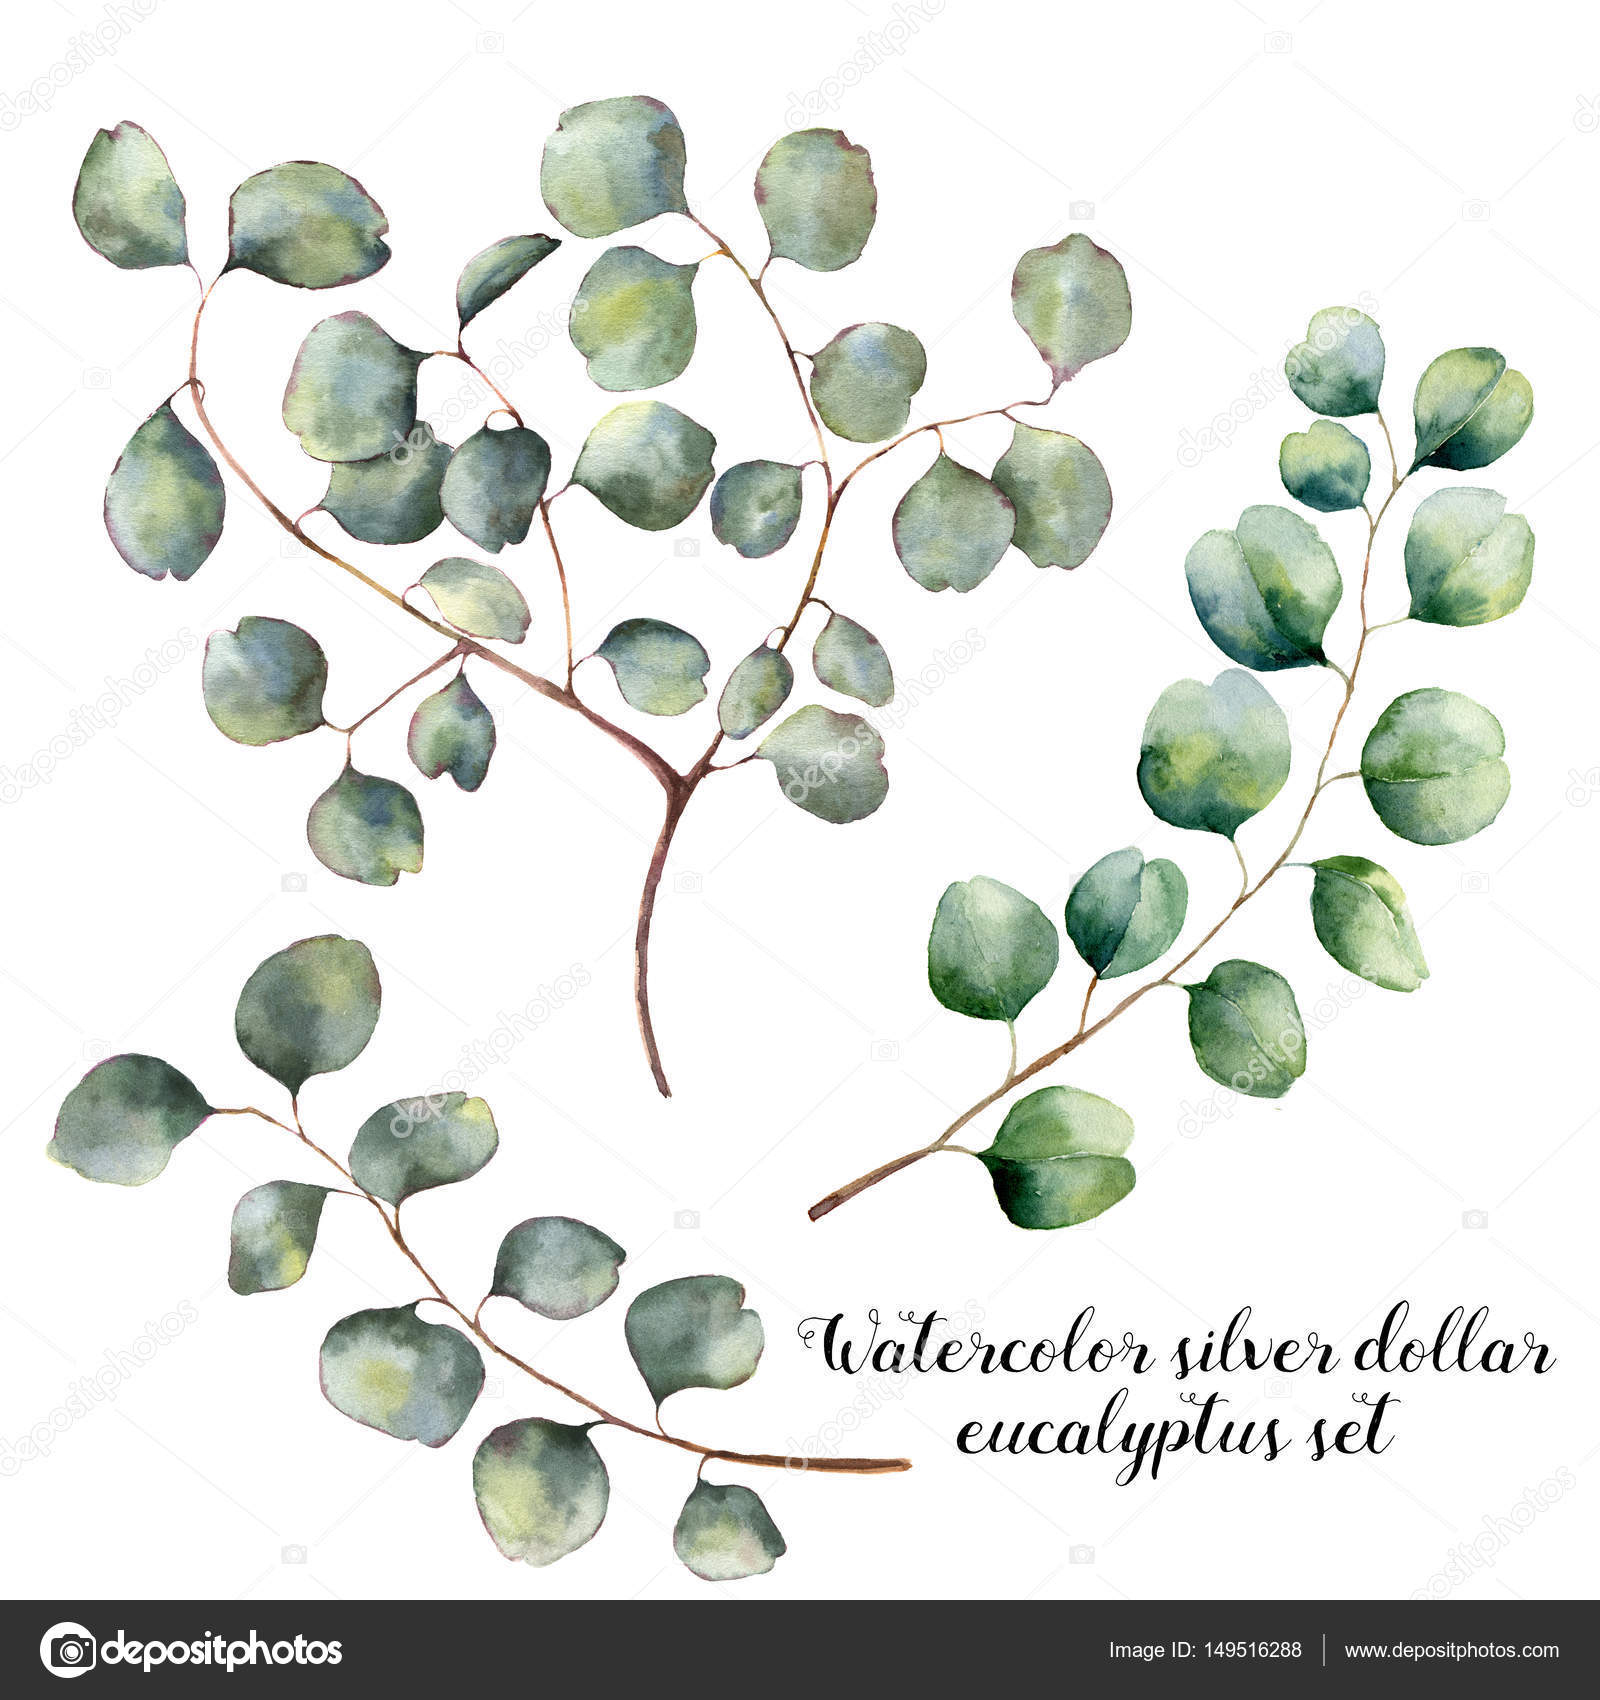 Feuille D'eucalyptus à L'aquarelle Et Dollar En Argent D'eucalyptus De  Branche. Illustration Botanique, Isolée